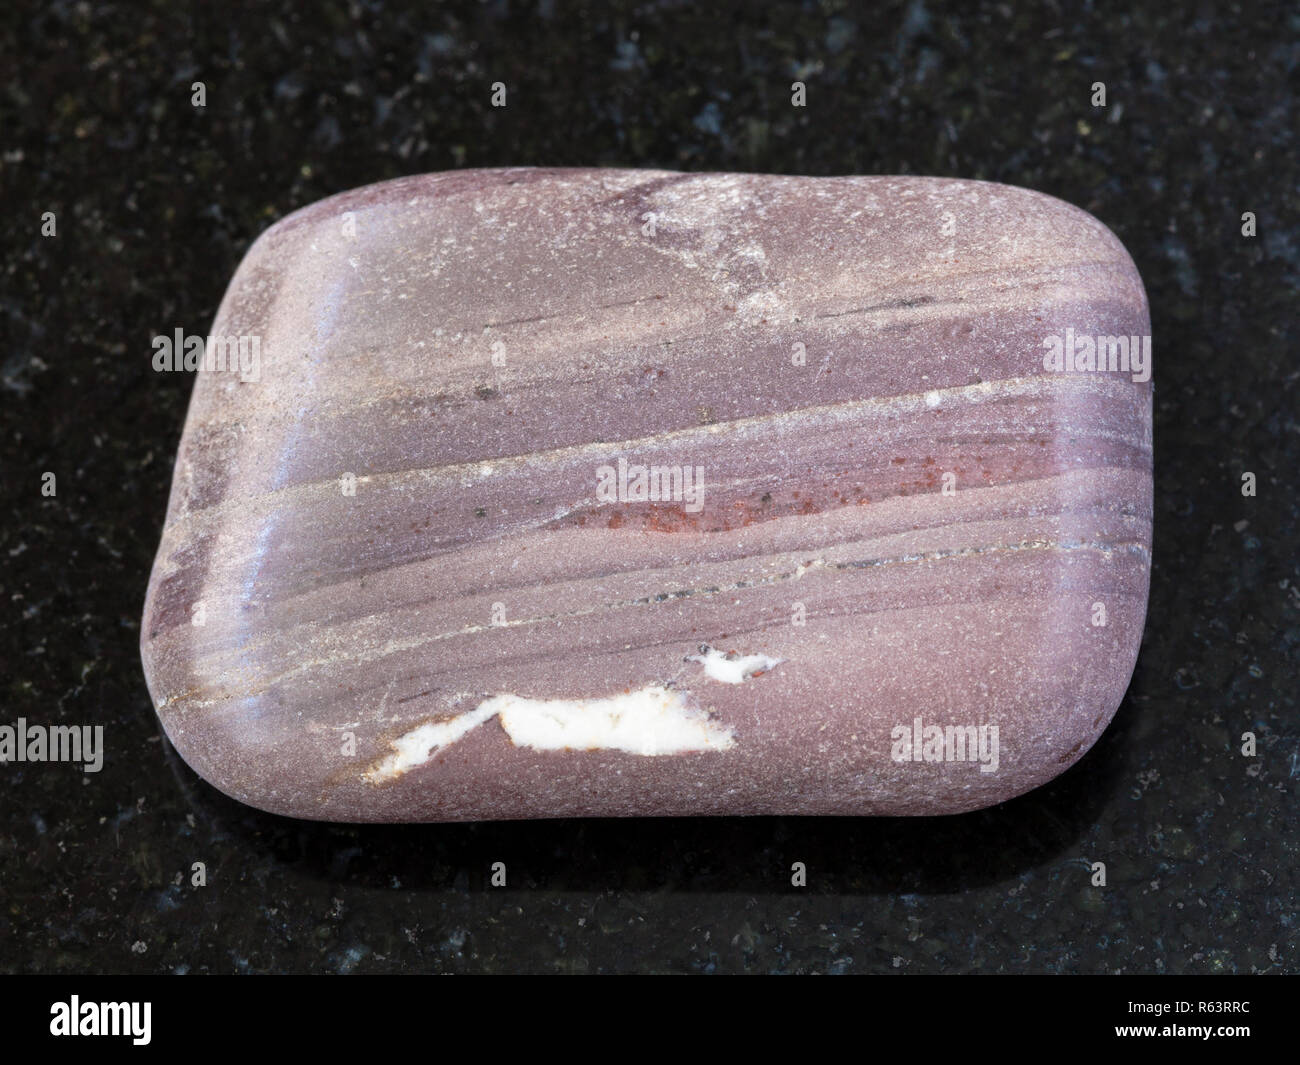 polished Argillite gemstone on dark background Stock Photo